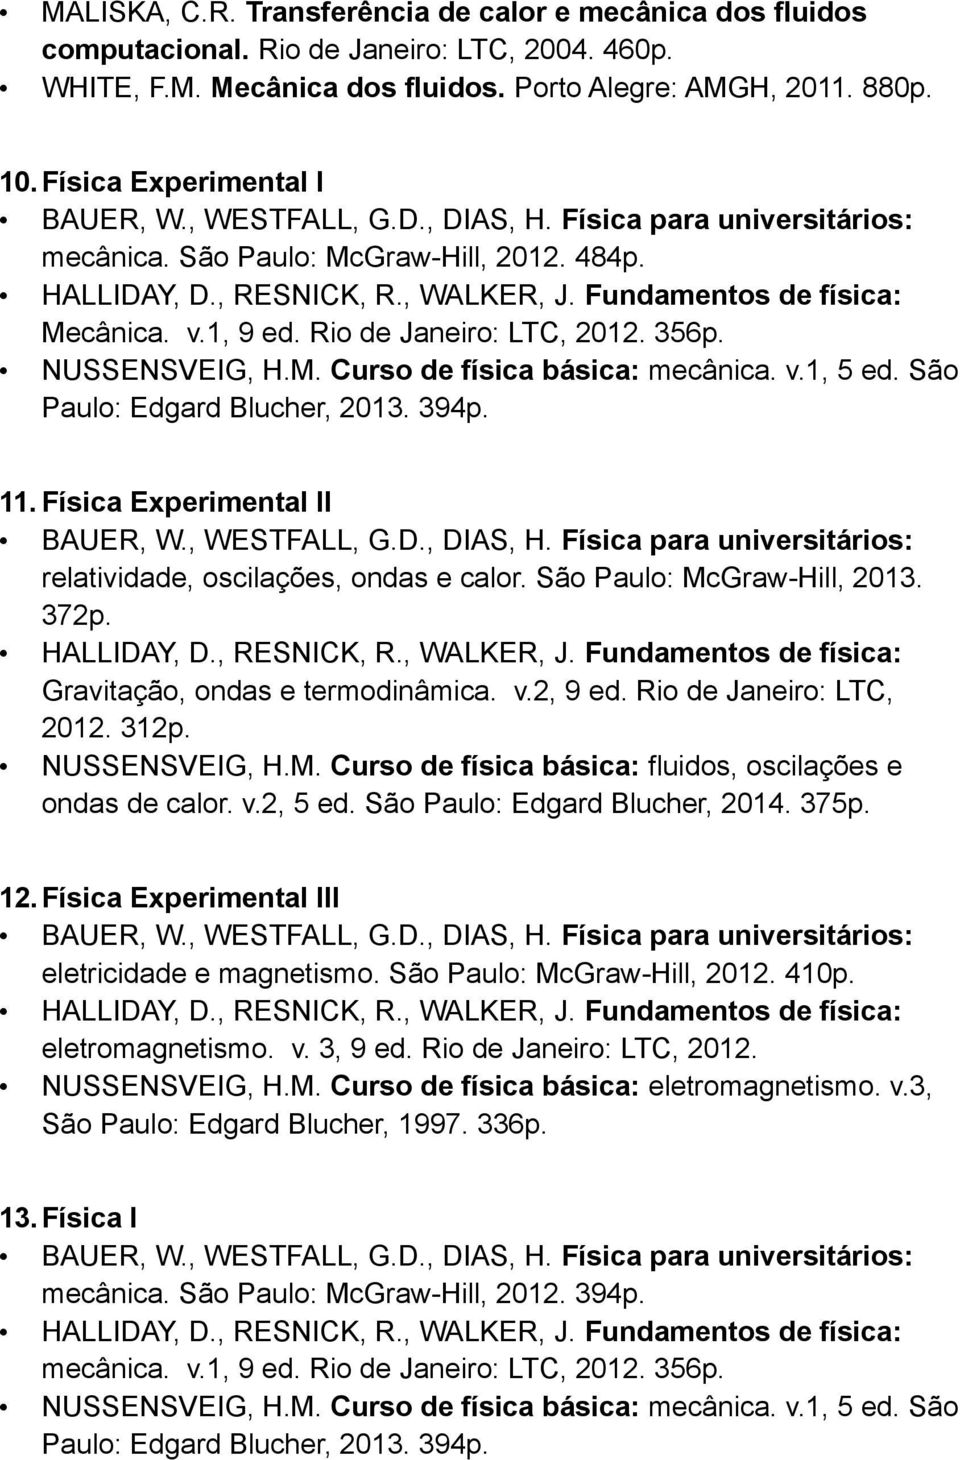 São Paulo: Edgard Blucher, 2013. 394p. 11. Física Experimental II relatividade, oscilações, ondas e calor. São Paulo: McGraw-Hill, 2013. 372p. Gravitação, ondas e termodinâmica. v.2, 9 ed.